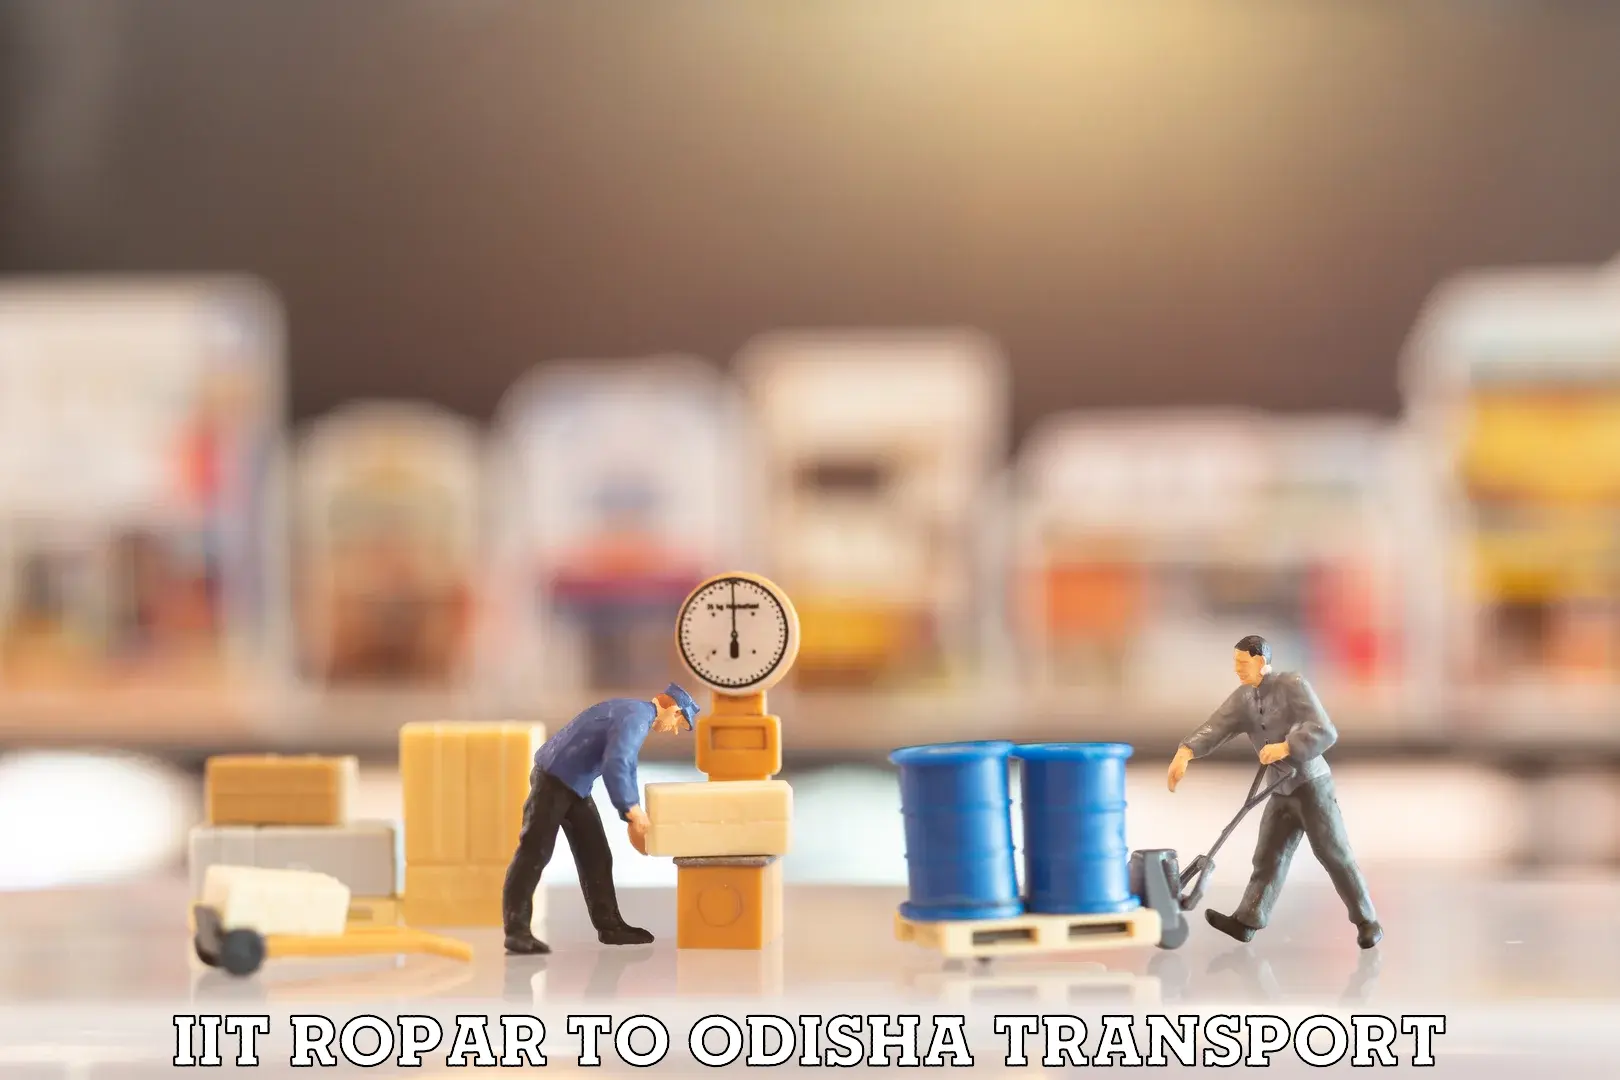 Nearest transport service in IIT Ropar to Morada